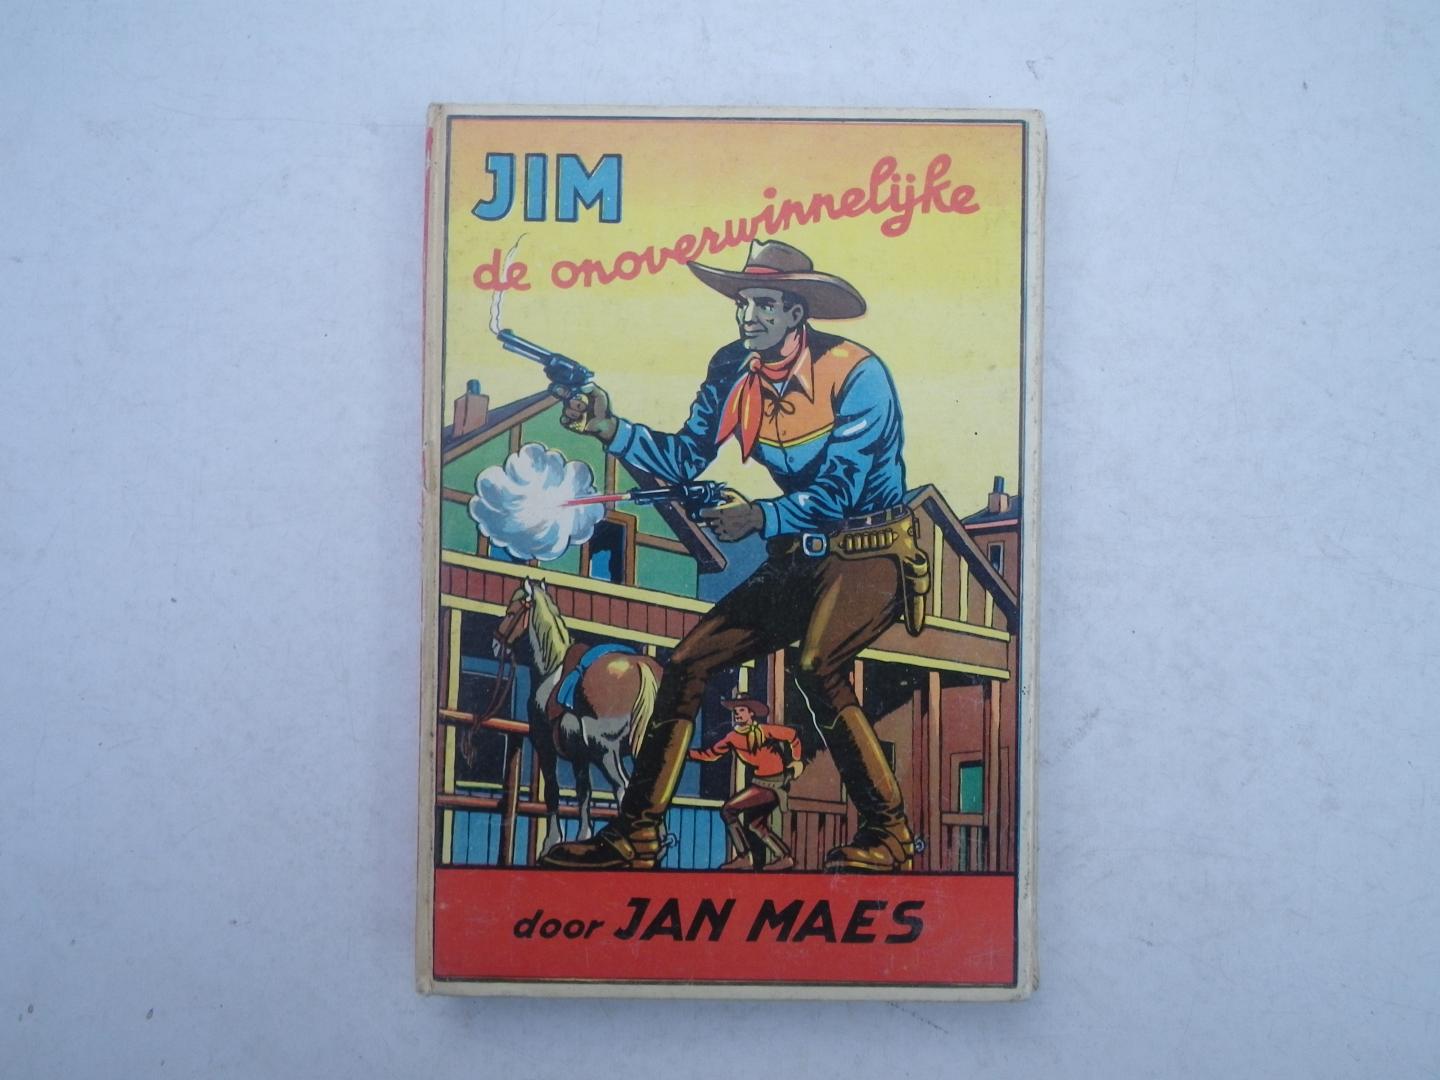 Jan Maes - Jim de onoverwinnelijke